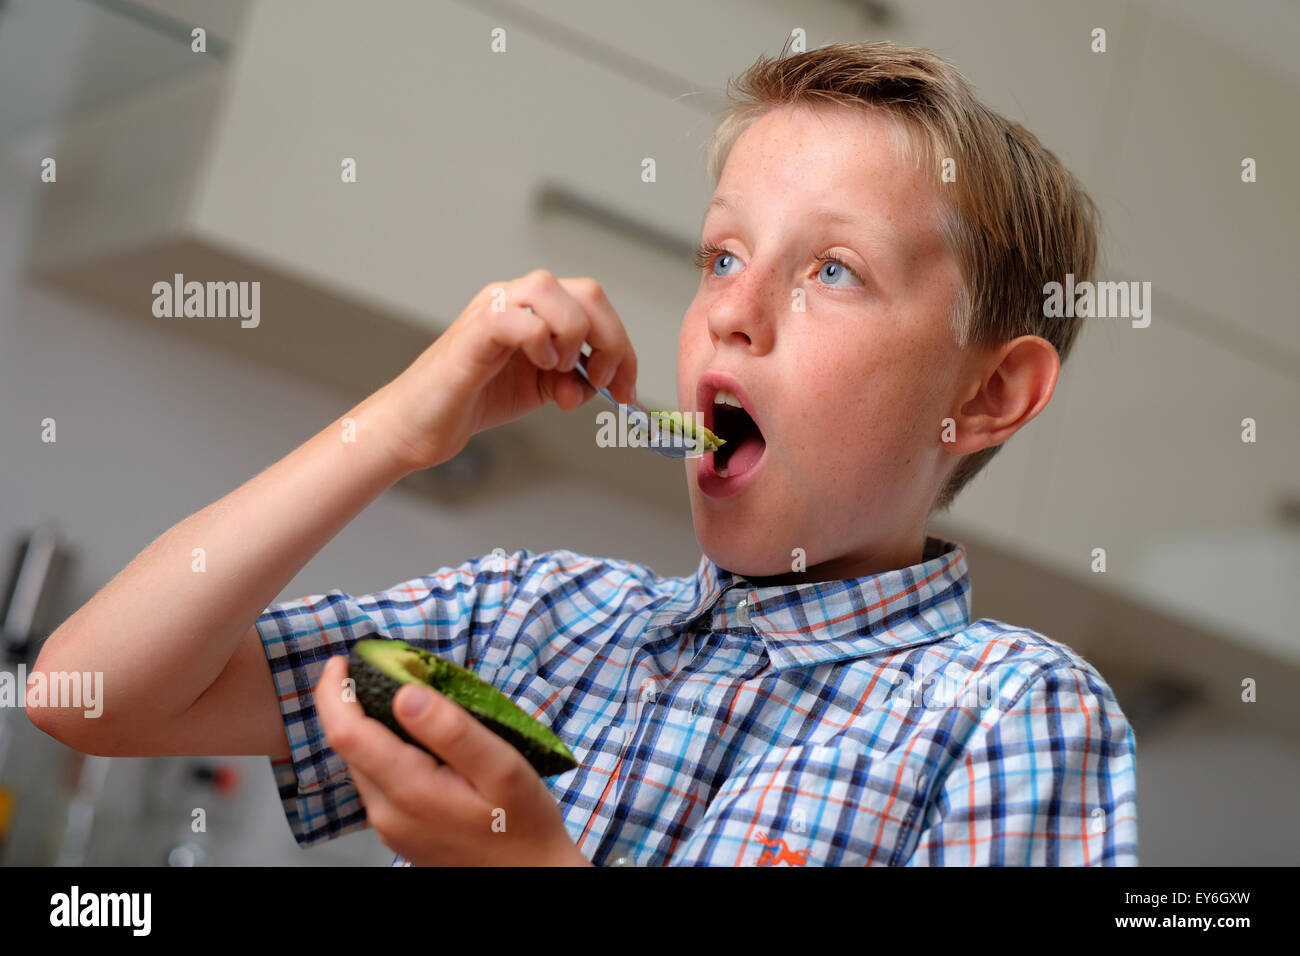 Un enfant manger un avocat avec une cuillère comme une collation santé Banque D'Images